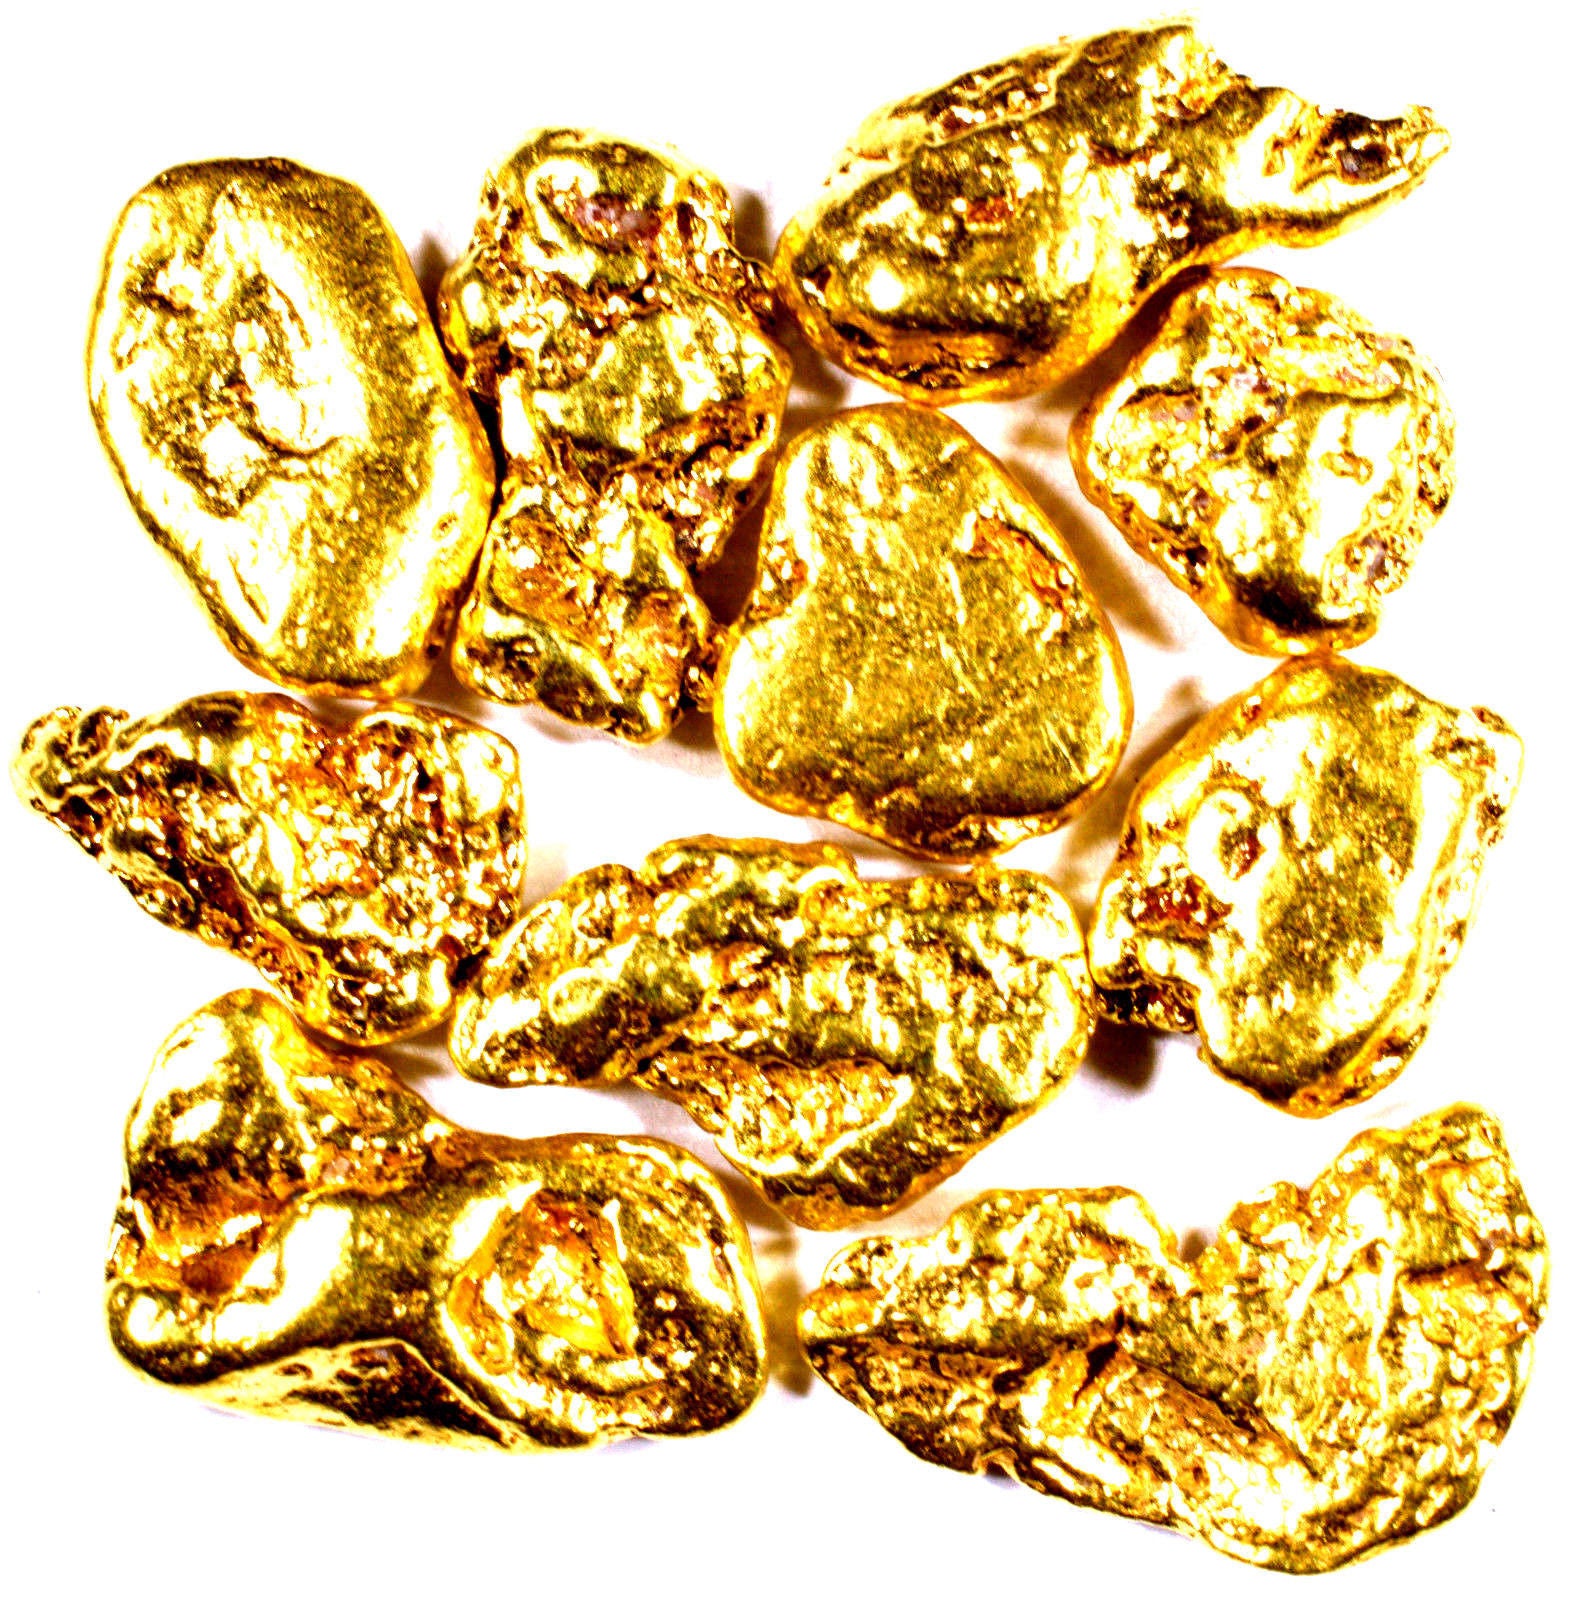 1 TROY OZ .999 SILVER MORGAN BAR BU + 50 PIECE ALASKAN PURE GOLD NUGGETS - Liquidbullion